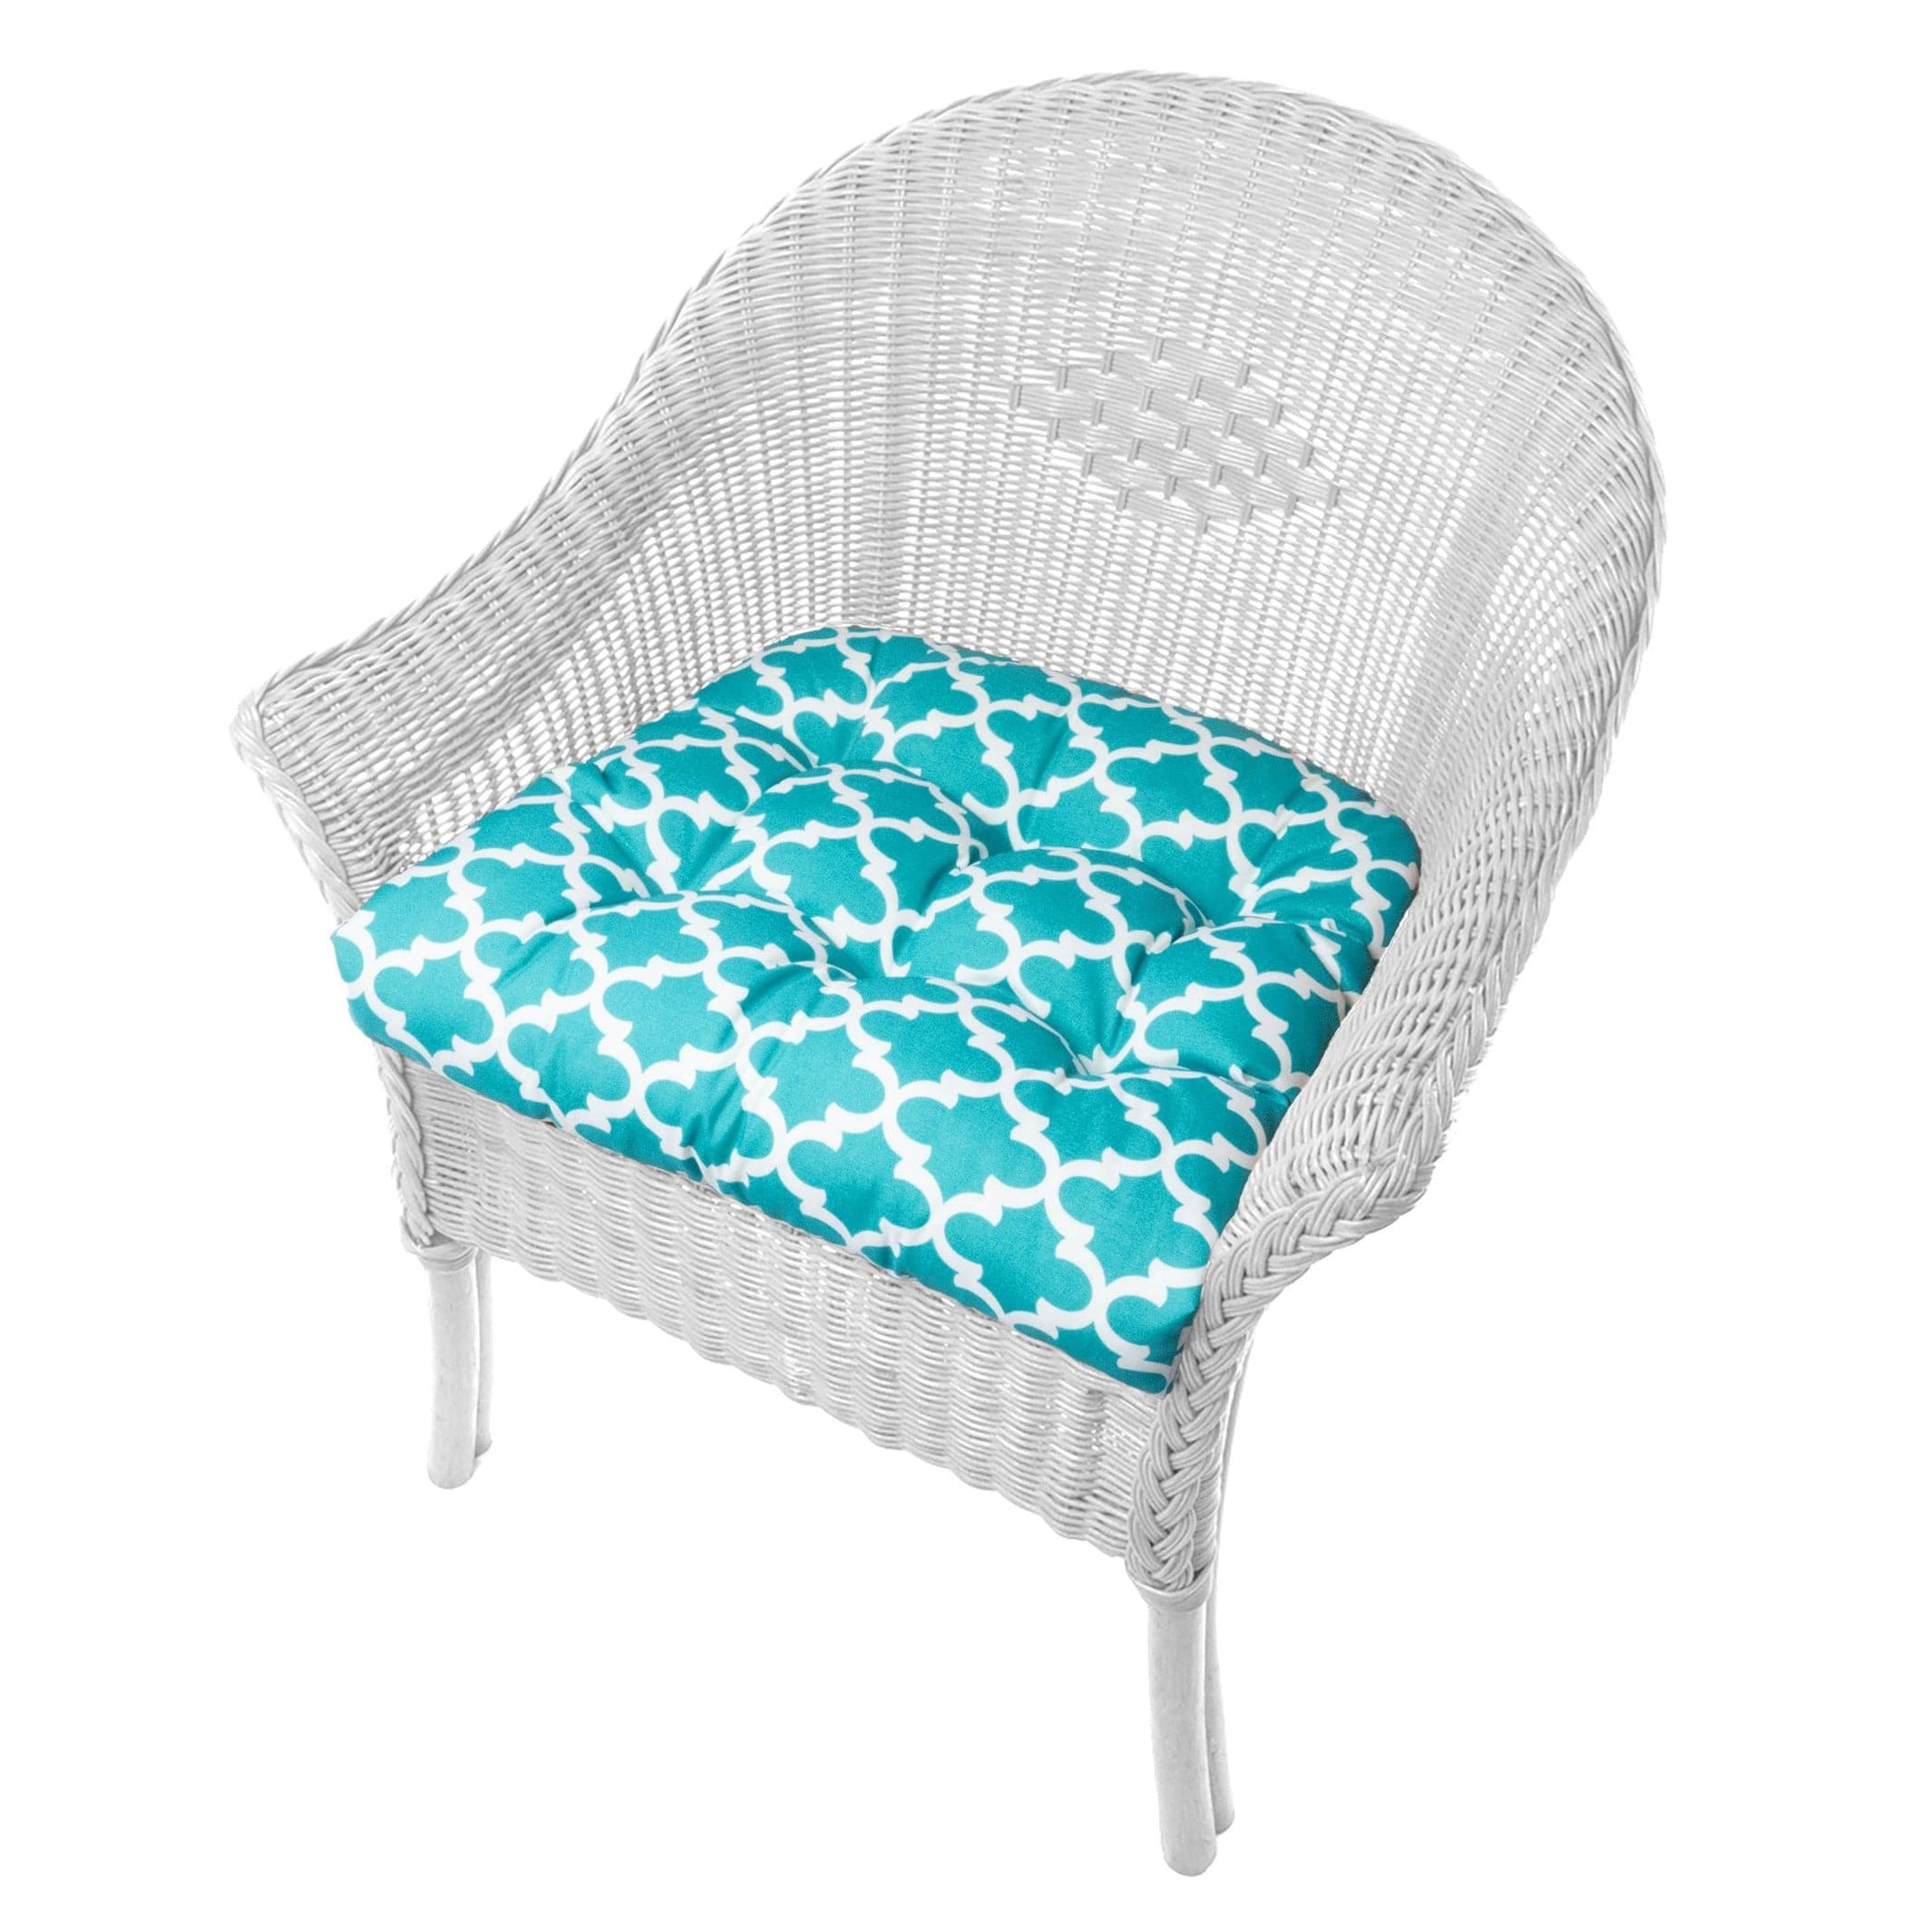 Fulton Aqua Patio Chair Cushions - Wicker Chair Cushions